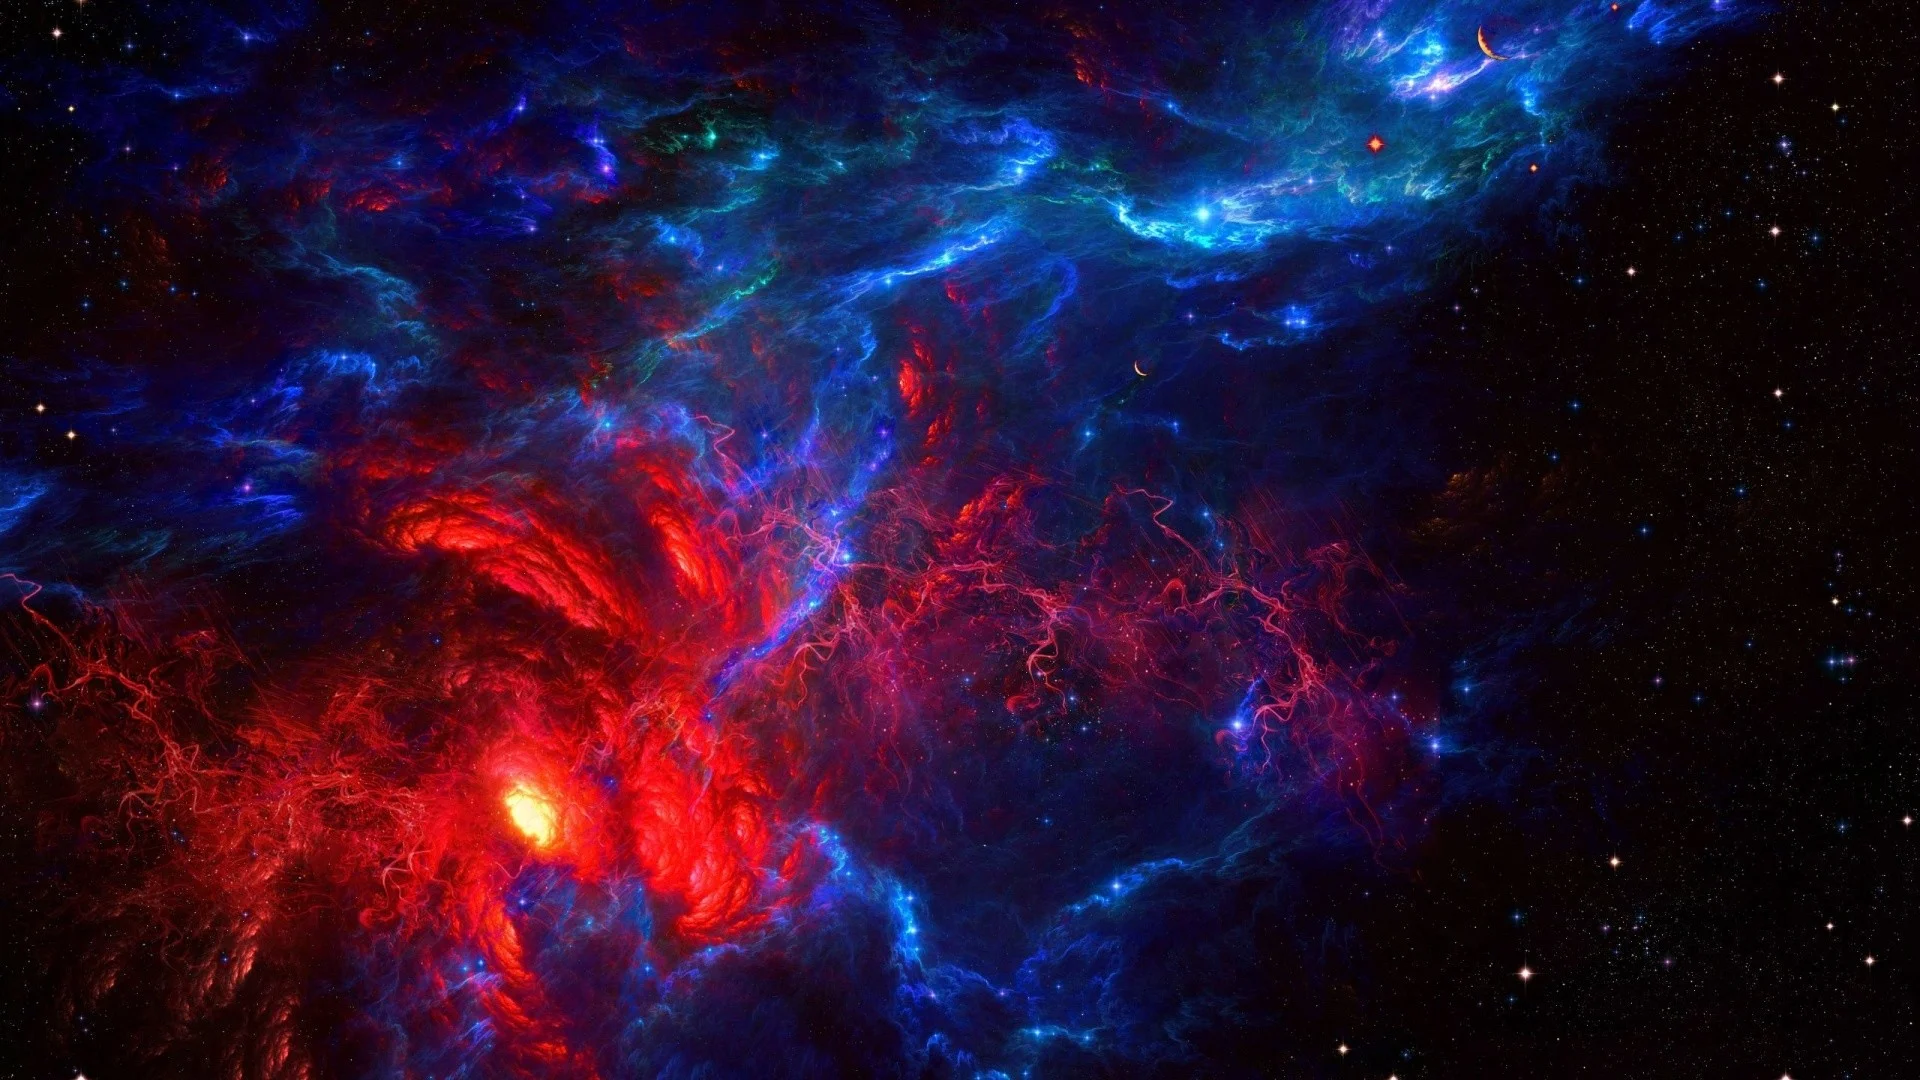 Galaxy 4k - bức tranh sơn mài của thiên nhiên với hàng triệu ngôi sao và các vùng không gian đầy kỳ diệu. Hãy đắm mình trong những hình ảnh Galaxy 4K để khám phá sức mạnh vô hạn của vũ trụ và cảm nhận rõ ràng nhất sự nhỏ bé của chúng ta trên hành tinh này.